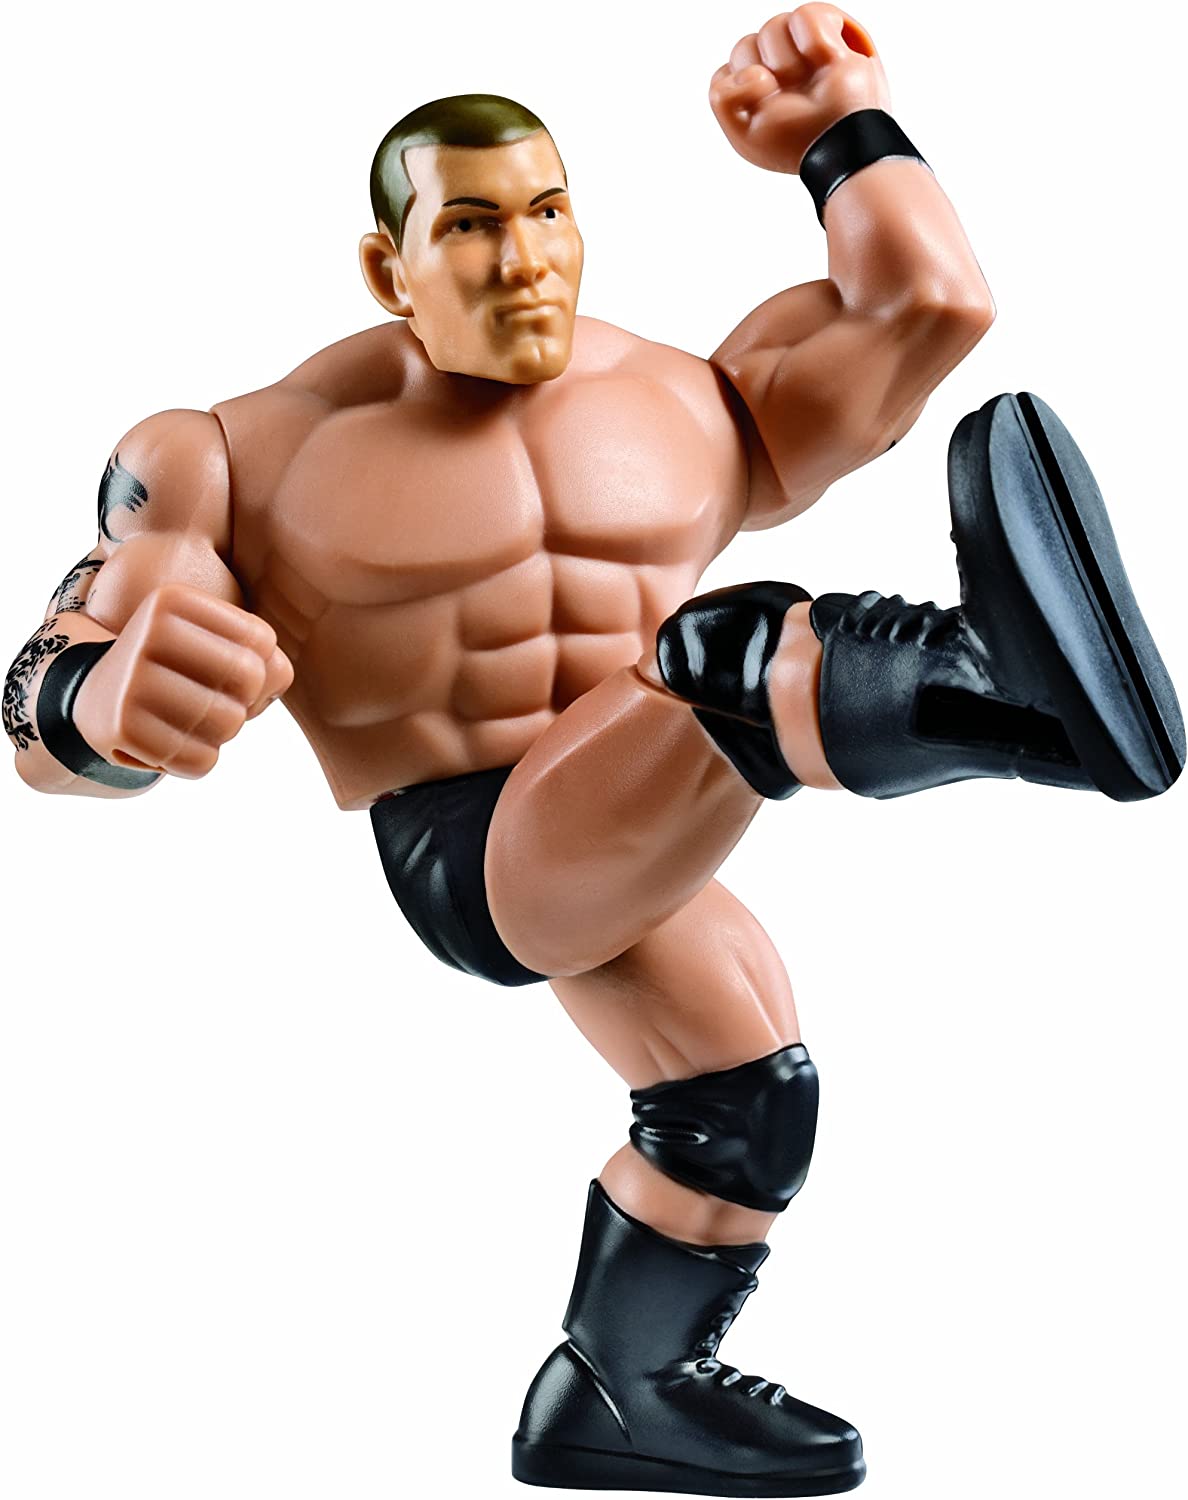 2012 WWE Mattel Power Slammers Series 1 Steam Rolling Randy Orton